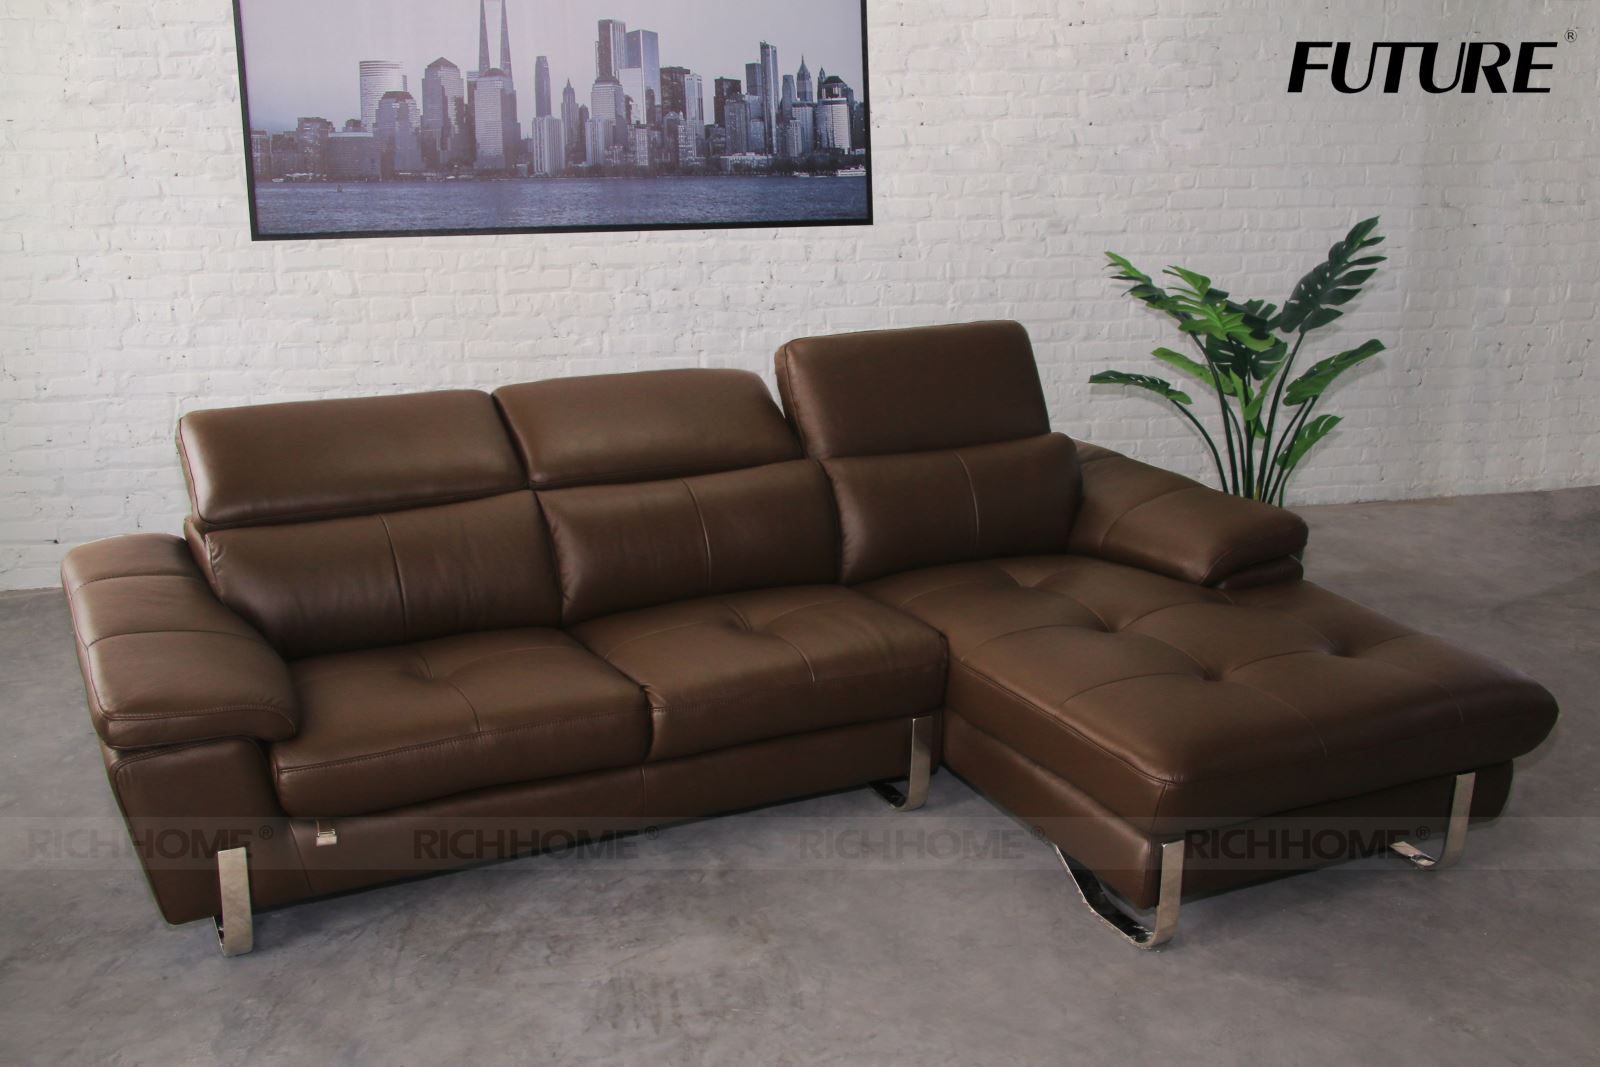 5 mẫu sofa góc nhập khẩu cao cấp cực phù hợp cho người già - Ảnh 2